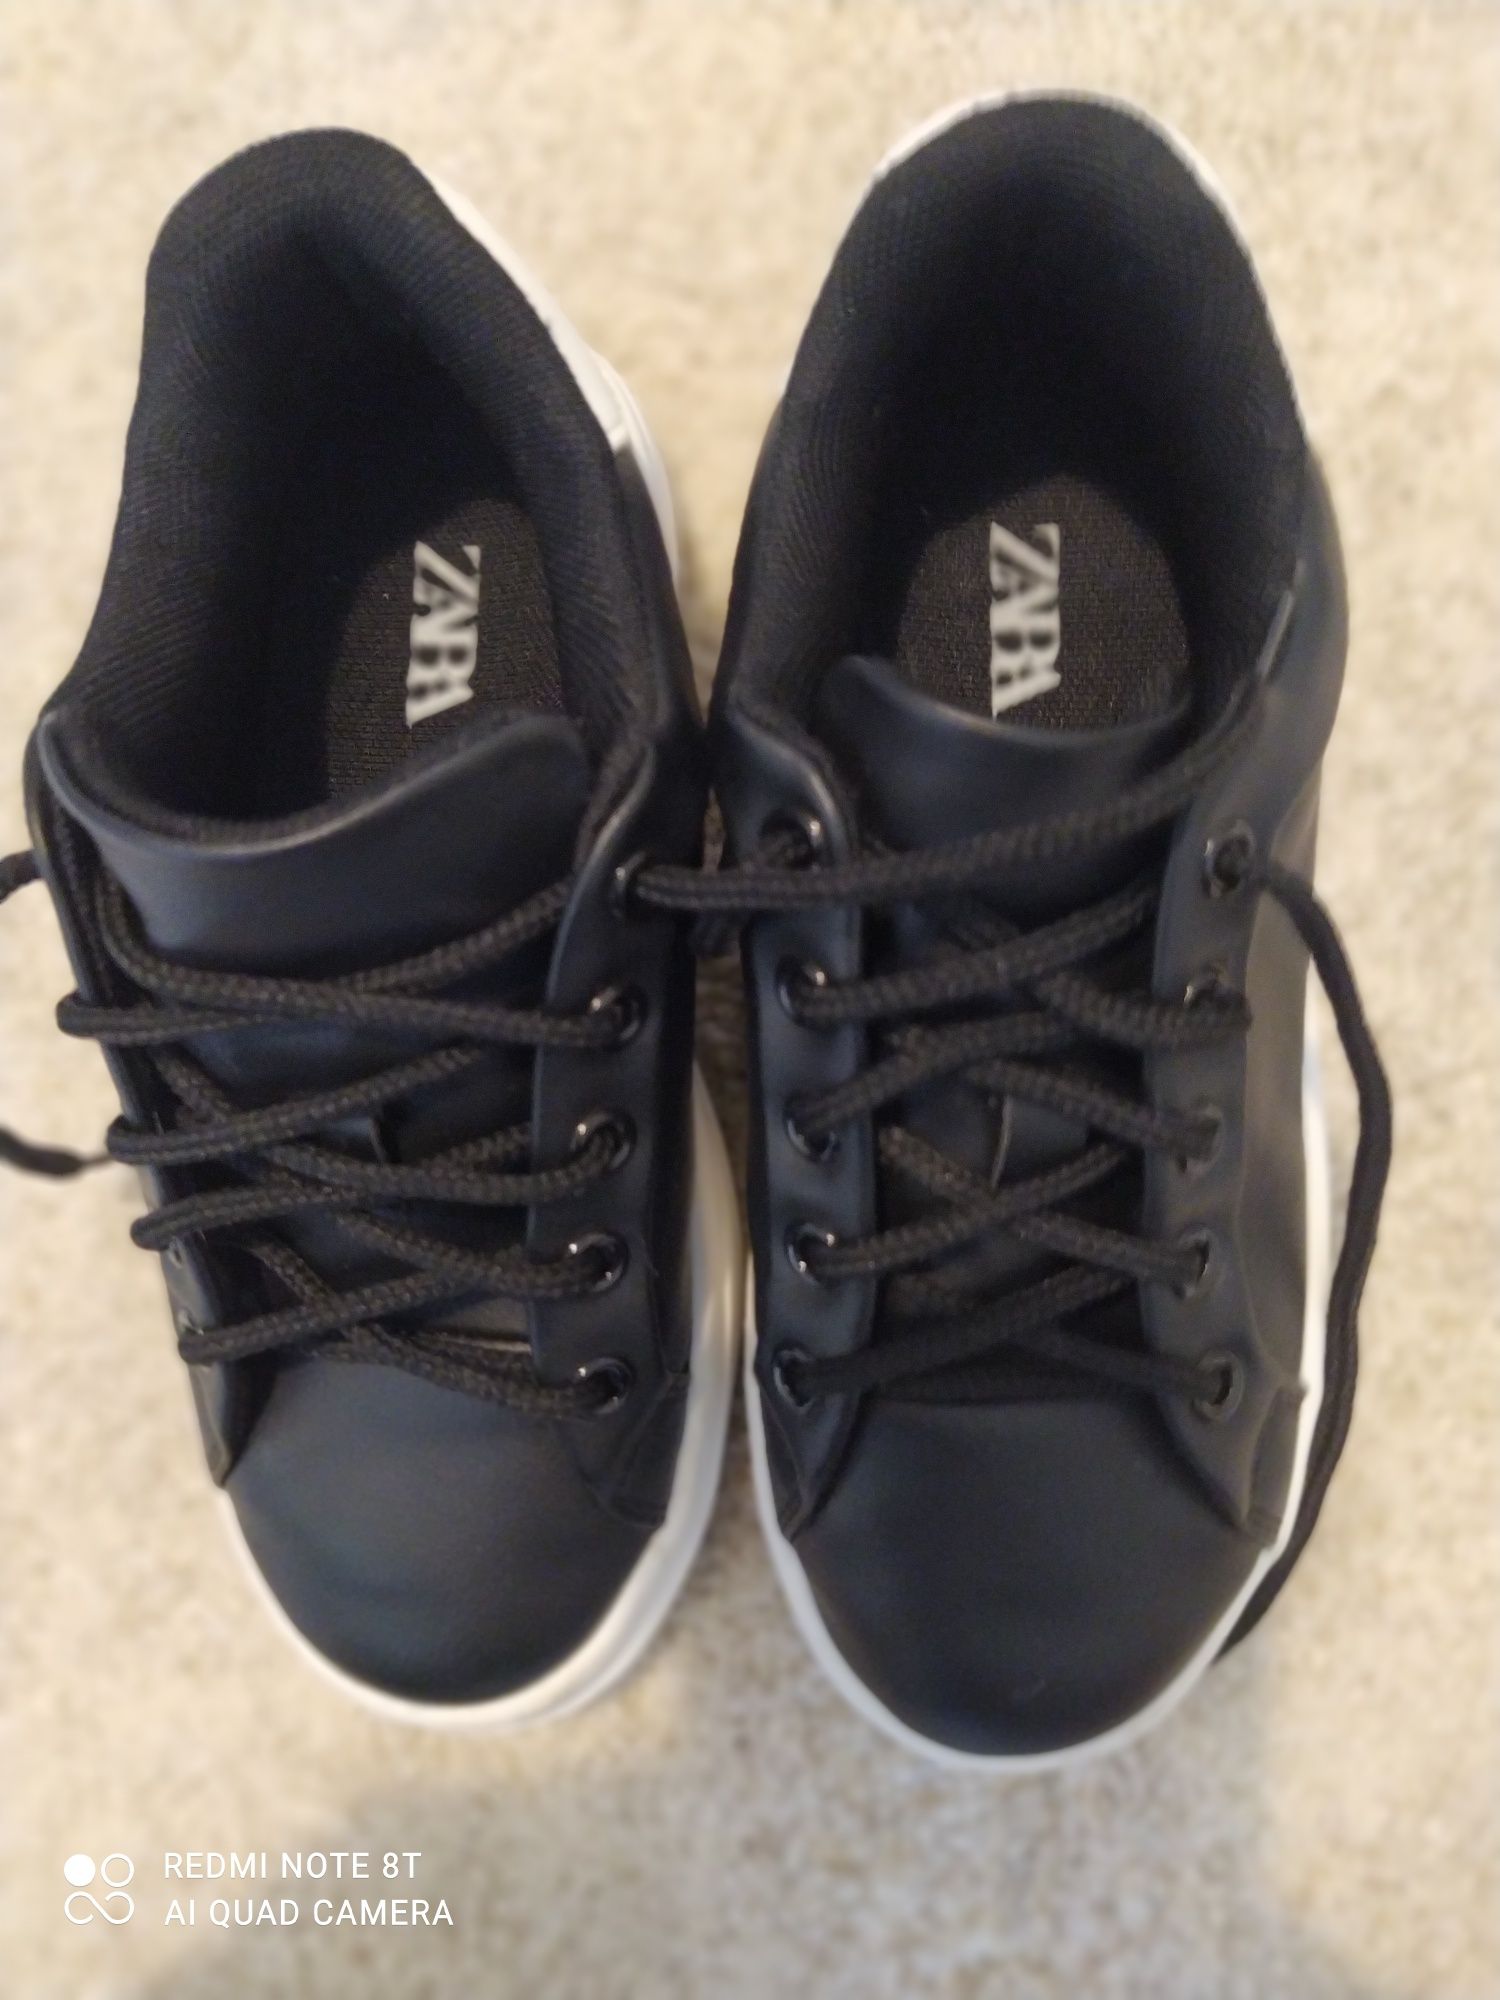 ZARA buty czarno biale 29